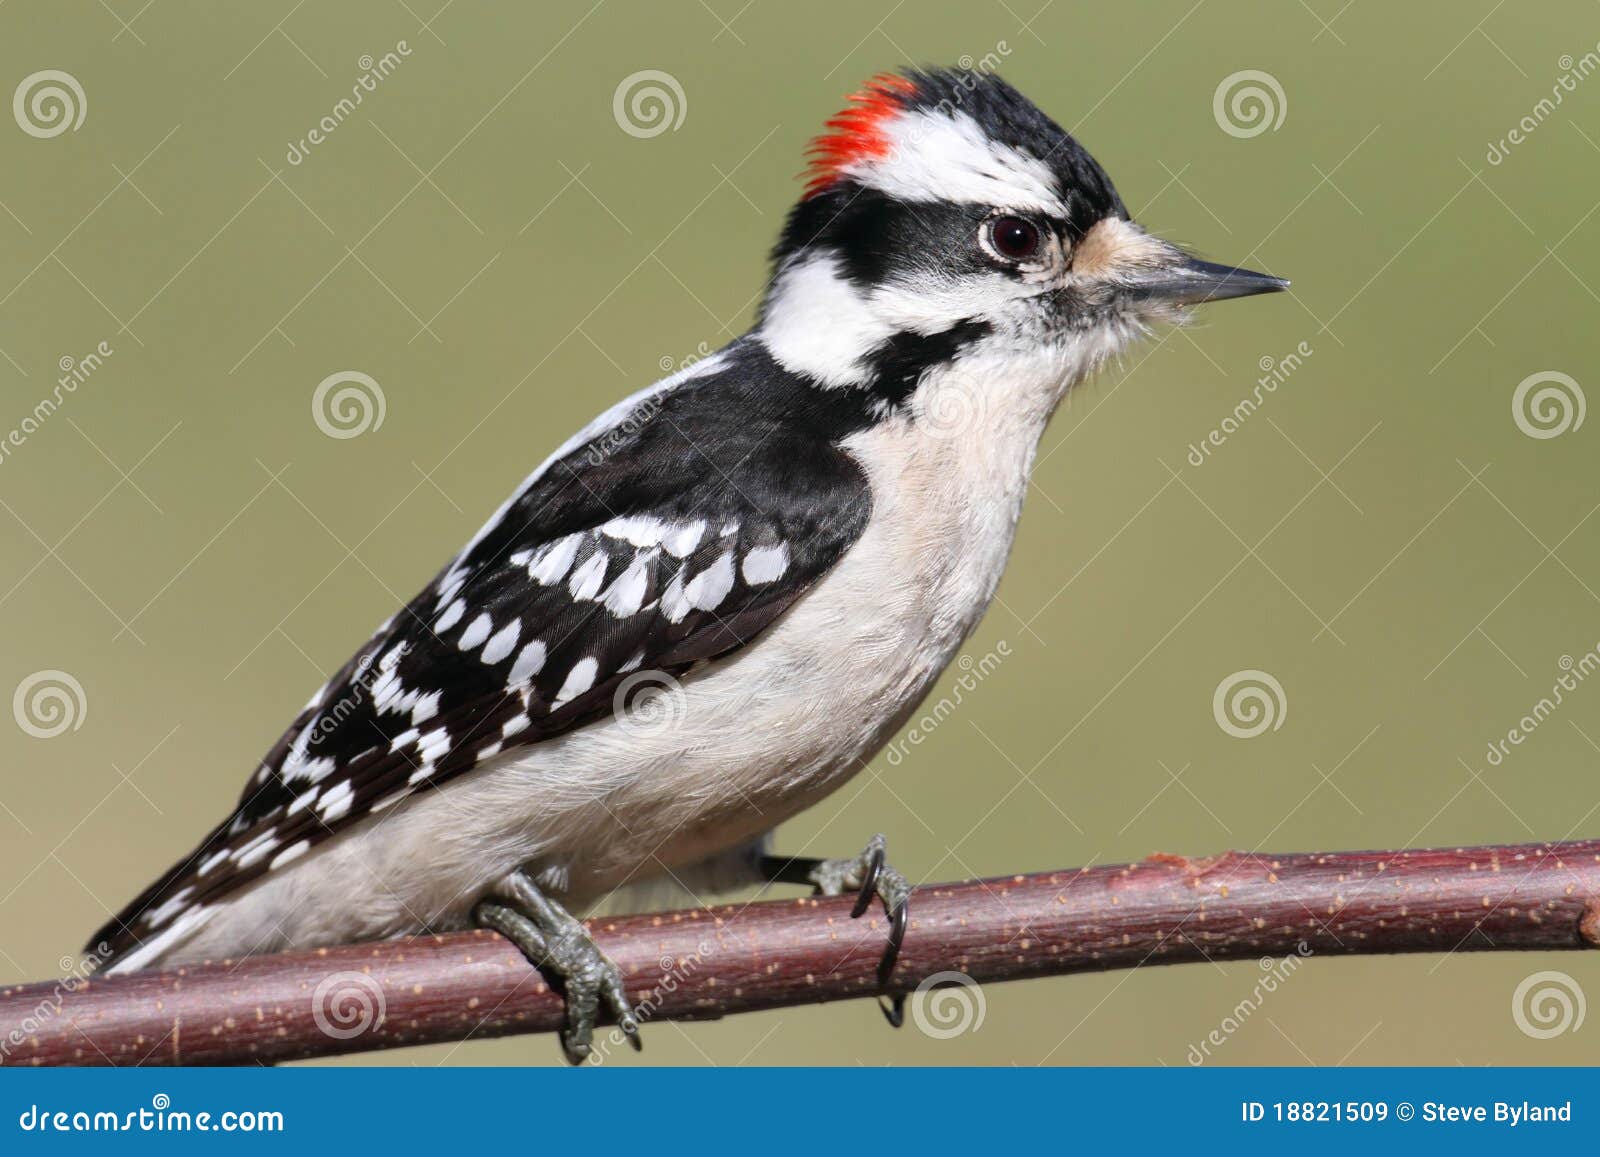 male downy woodpecker (picoides pubescens)